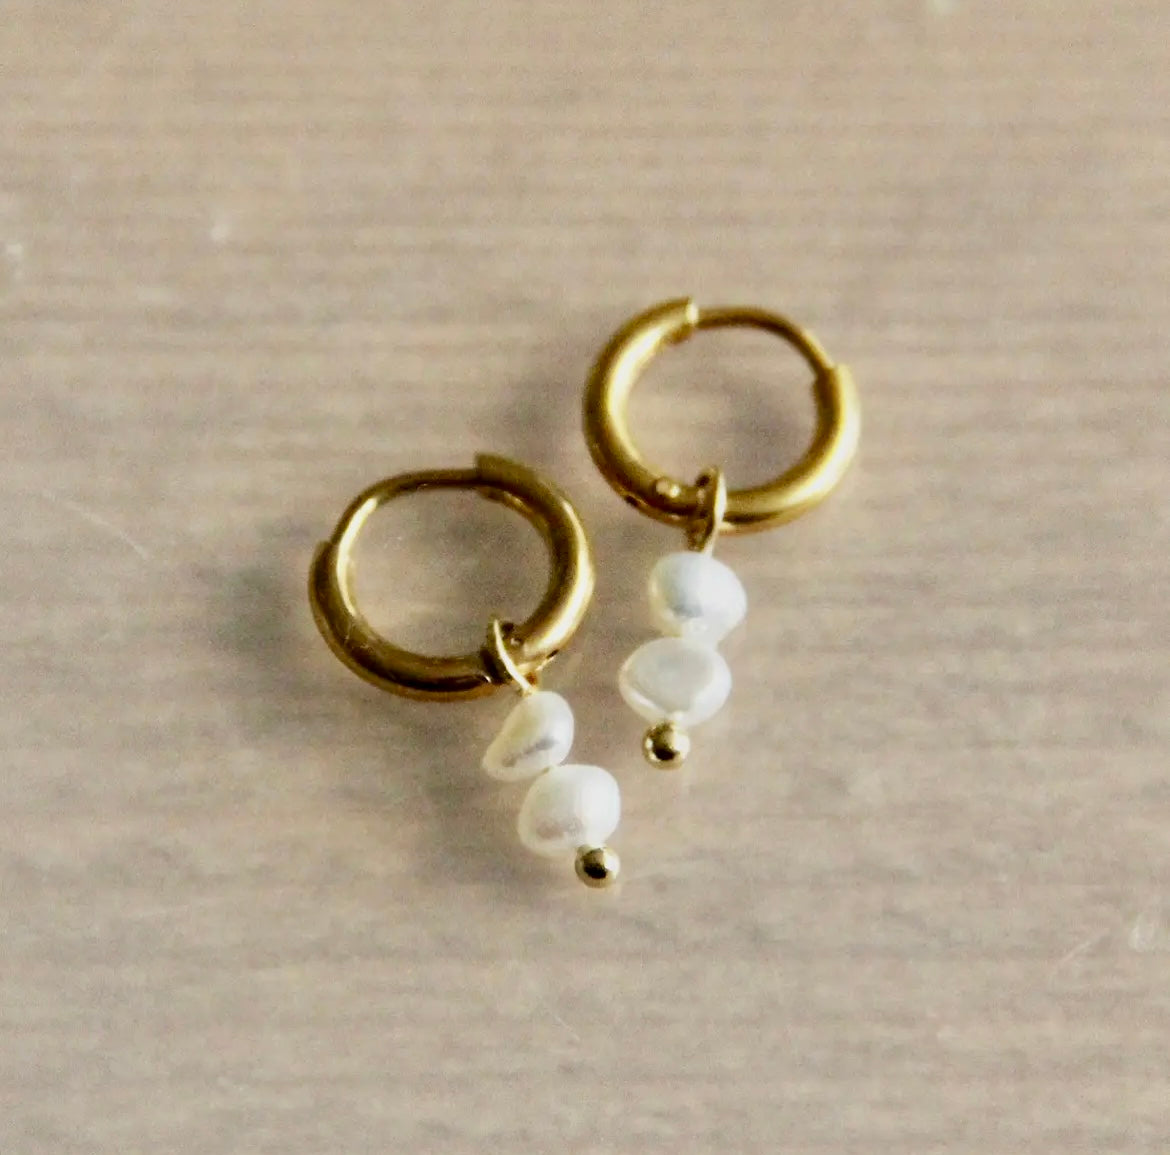 Goldene Ohrringe mit zwei kleinen Süsswasserperlen. Diese Creolen mit klassischen chic haben zwei weiße Perlen. 